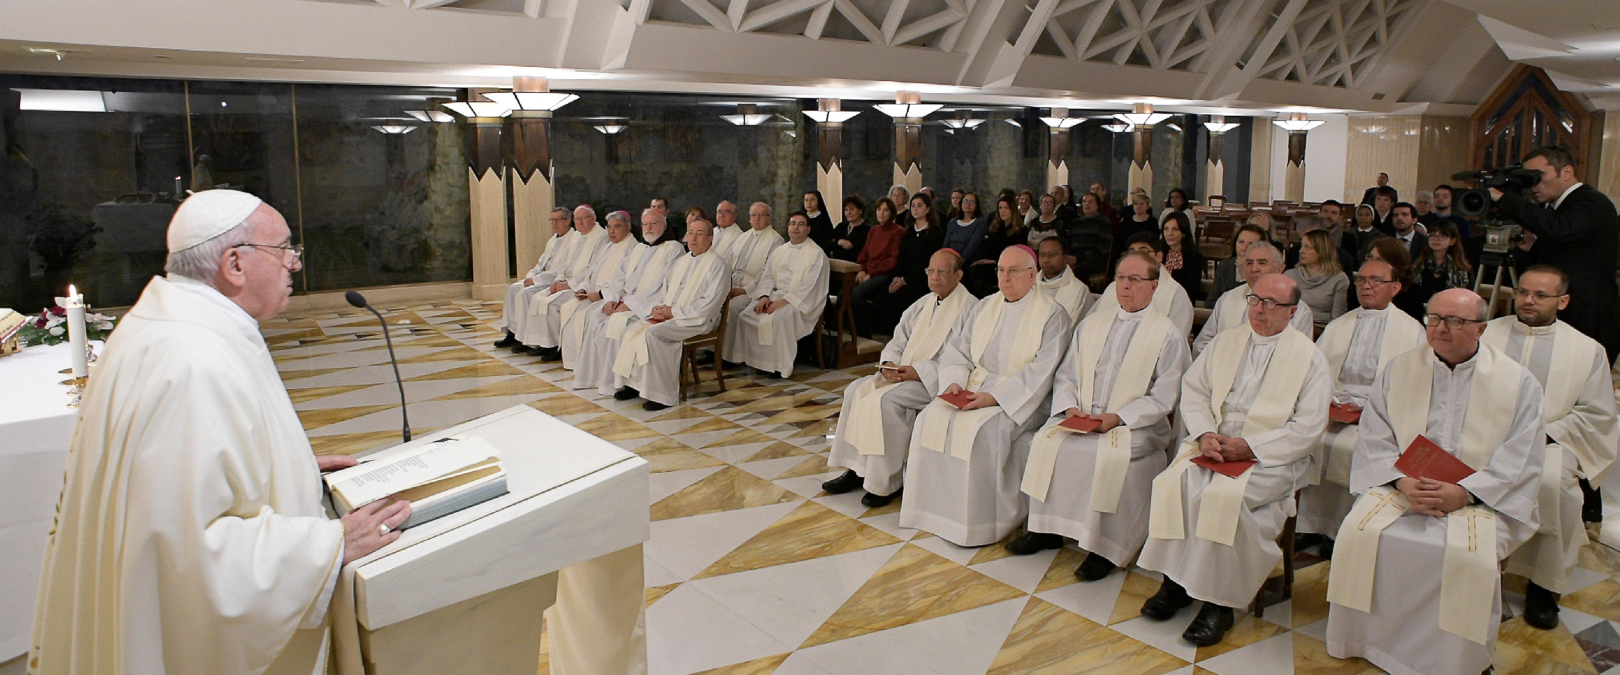 Hoy, 3 de diciembre de 2019, en la homilía de la Misa en la Casa Santa Marta, el Santo Padre...